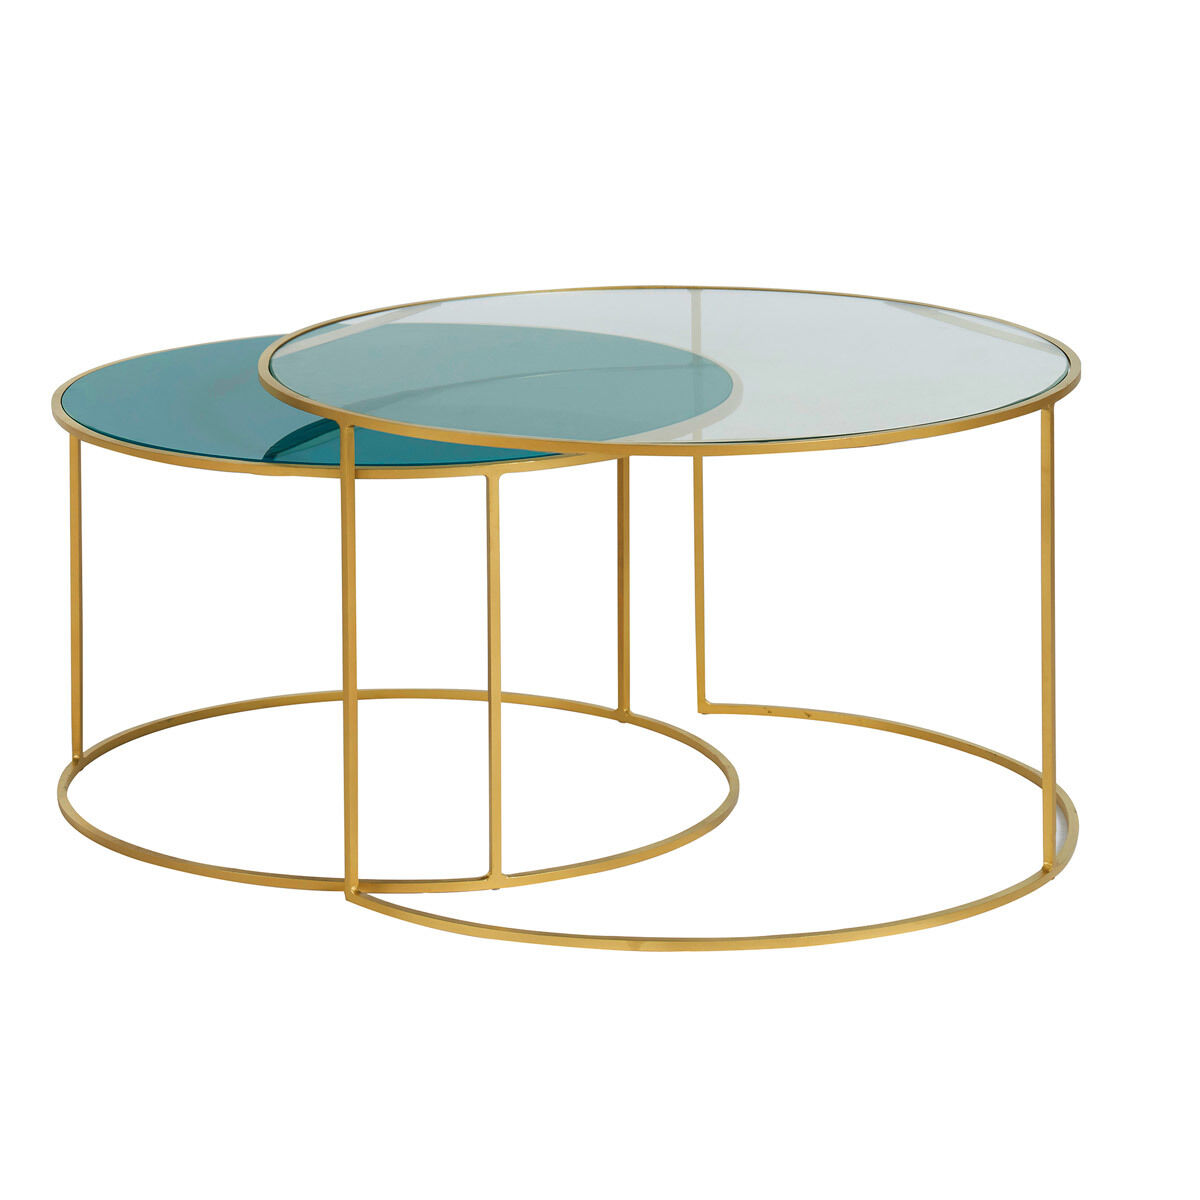 Miliboo Set de 2 mesas nido de centro en metal dorado y cristal tintado azul petróleo ROXO